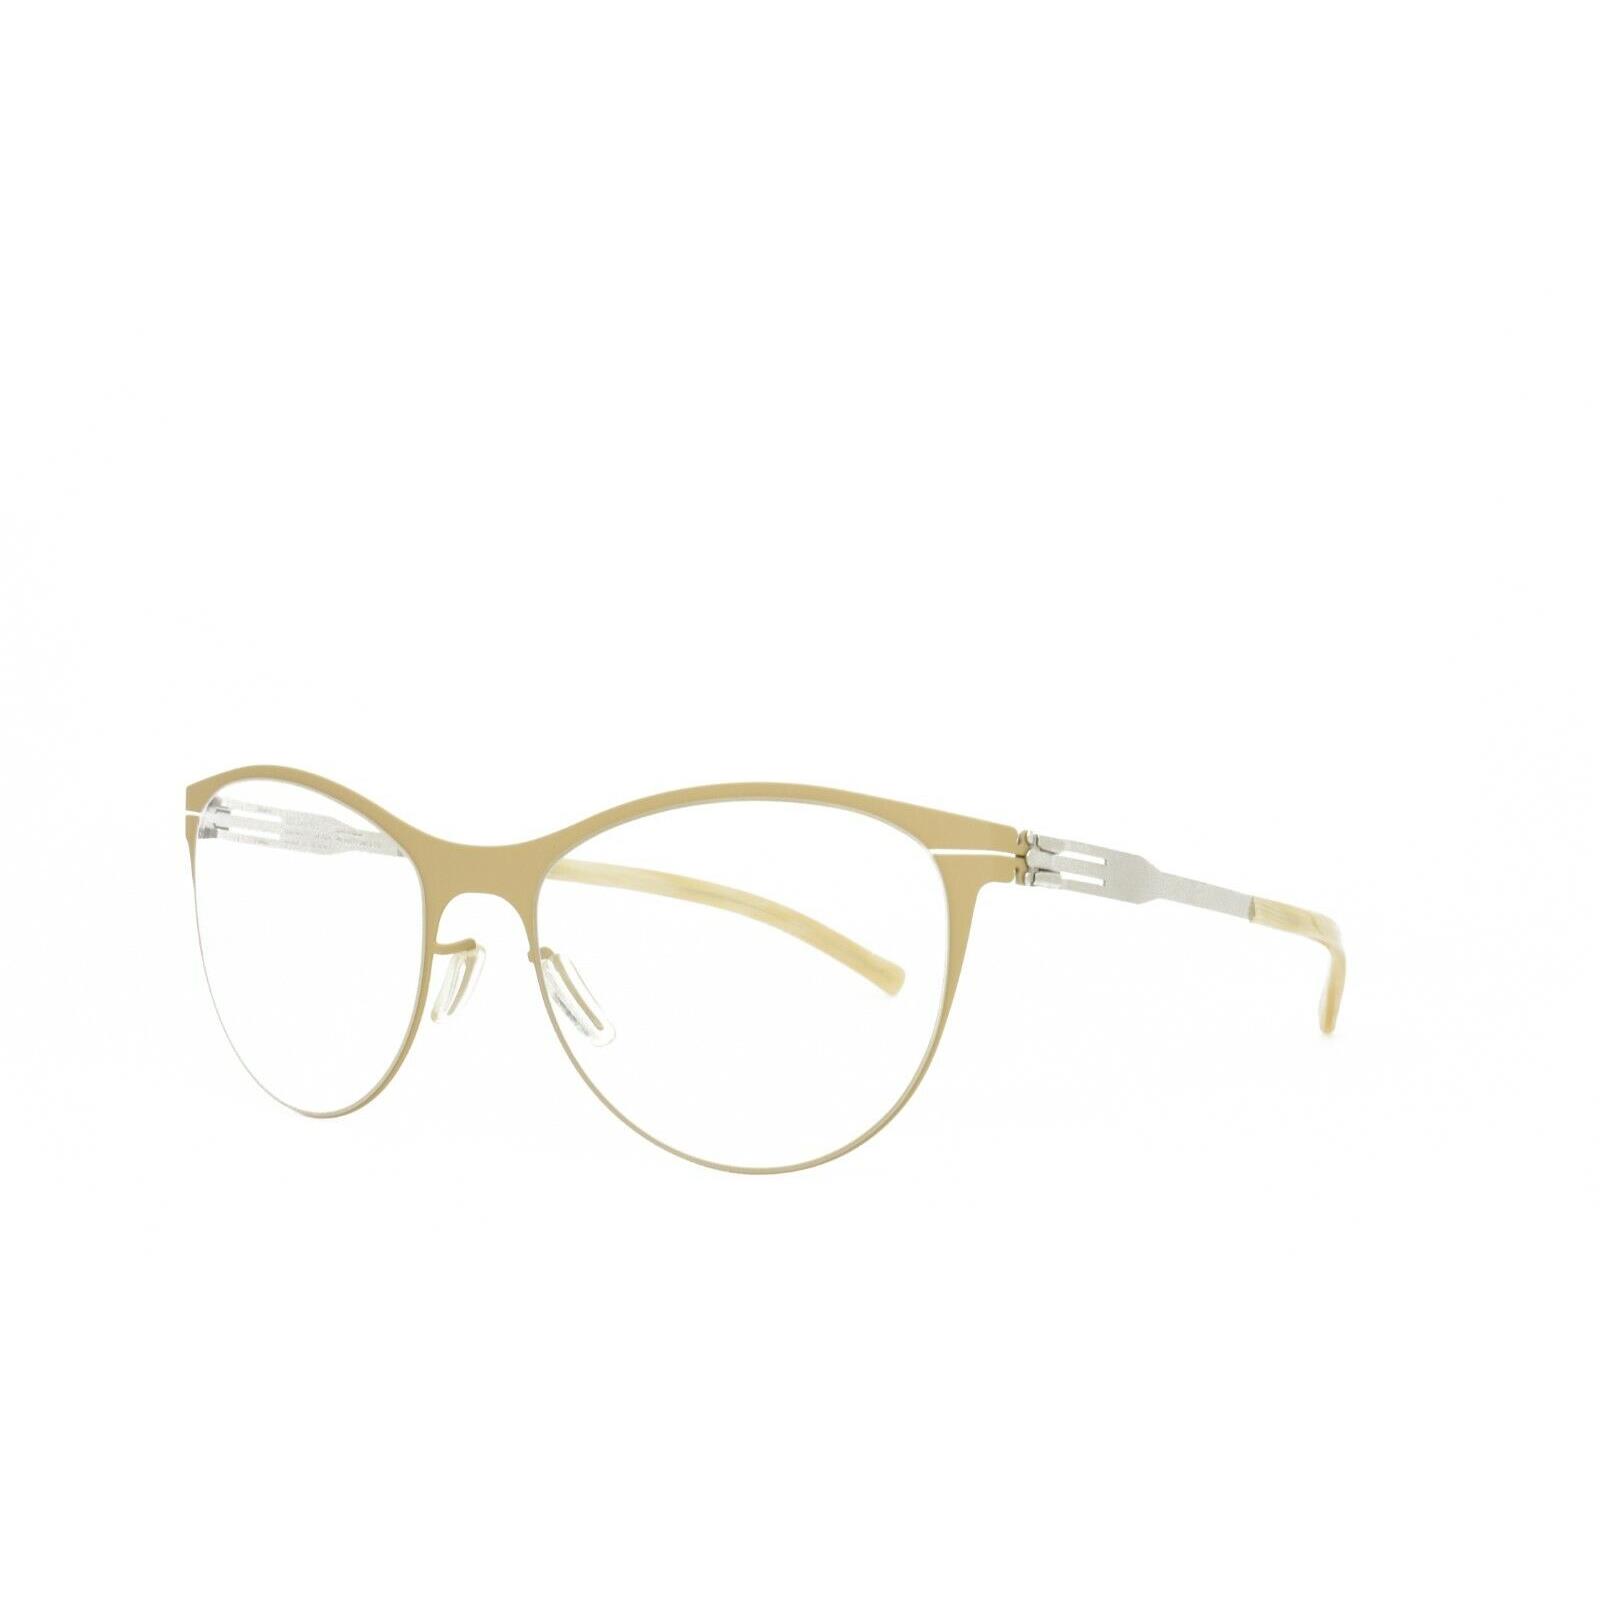 iC Berlin Eyeglasses Lucie H. Desert Pearl 54-19-145